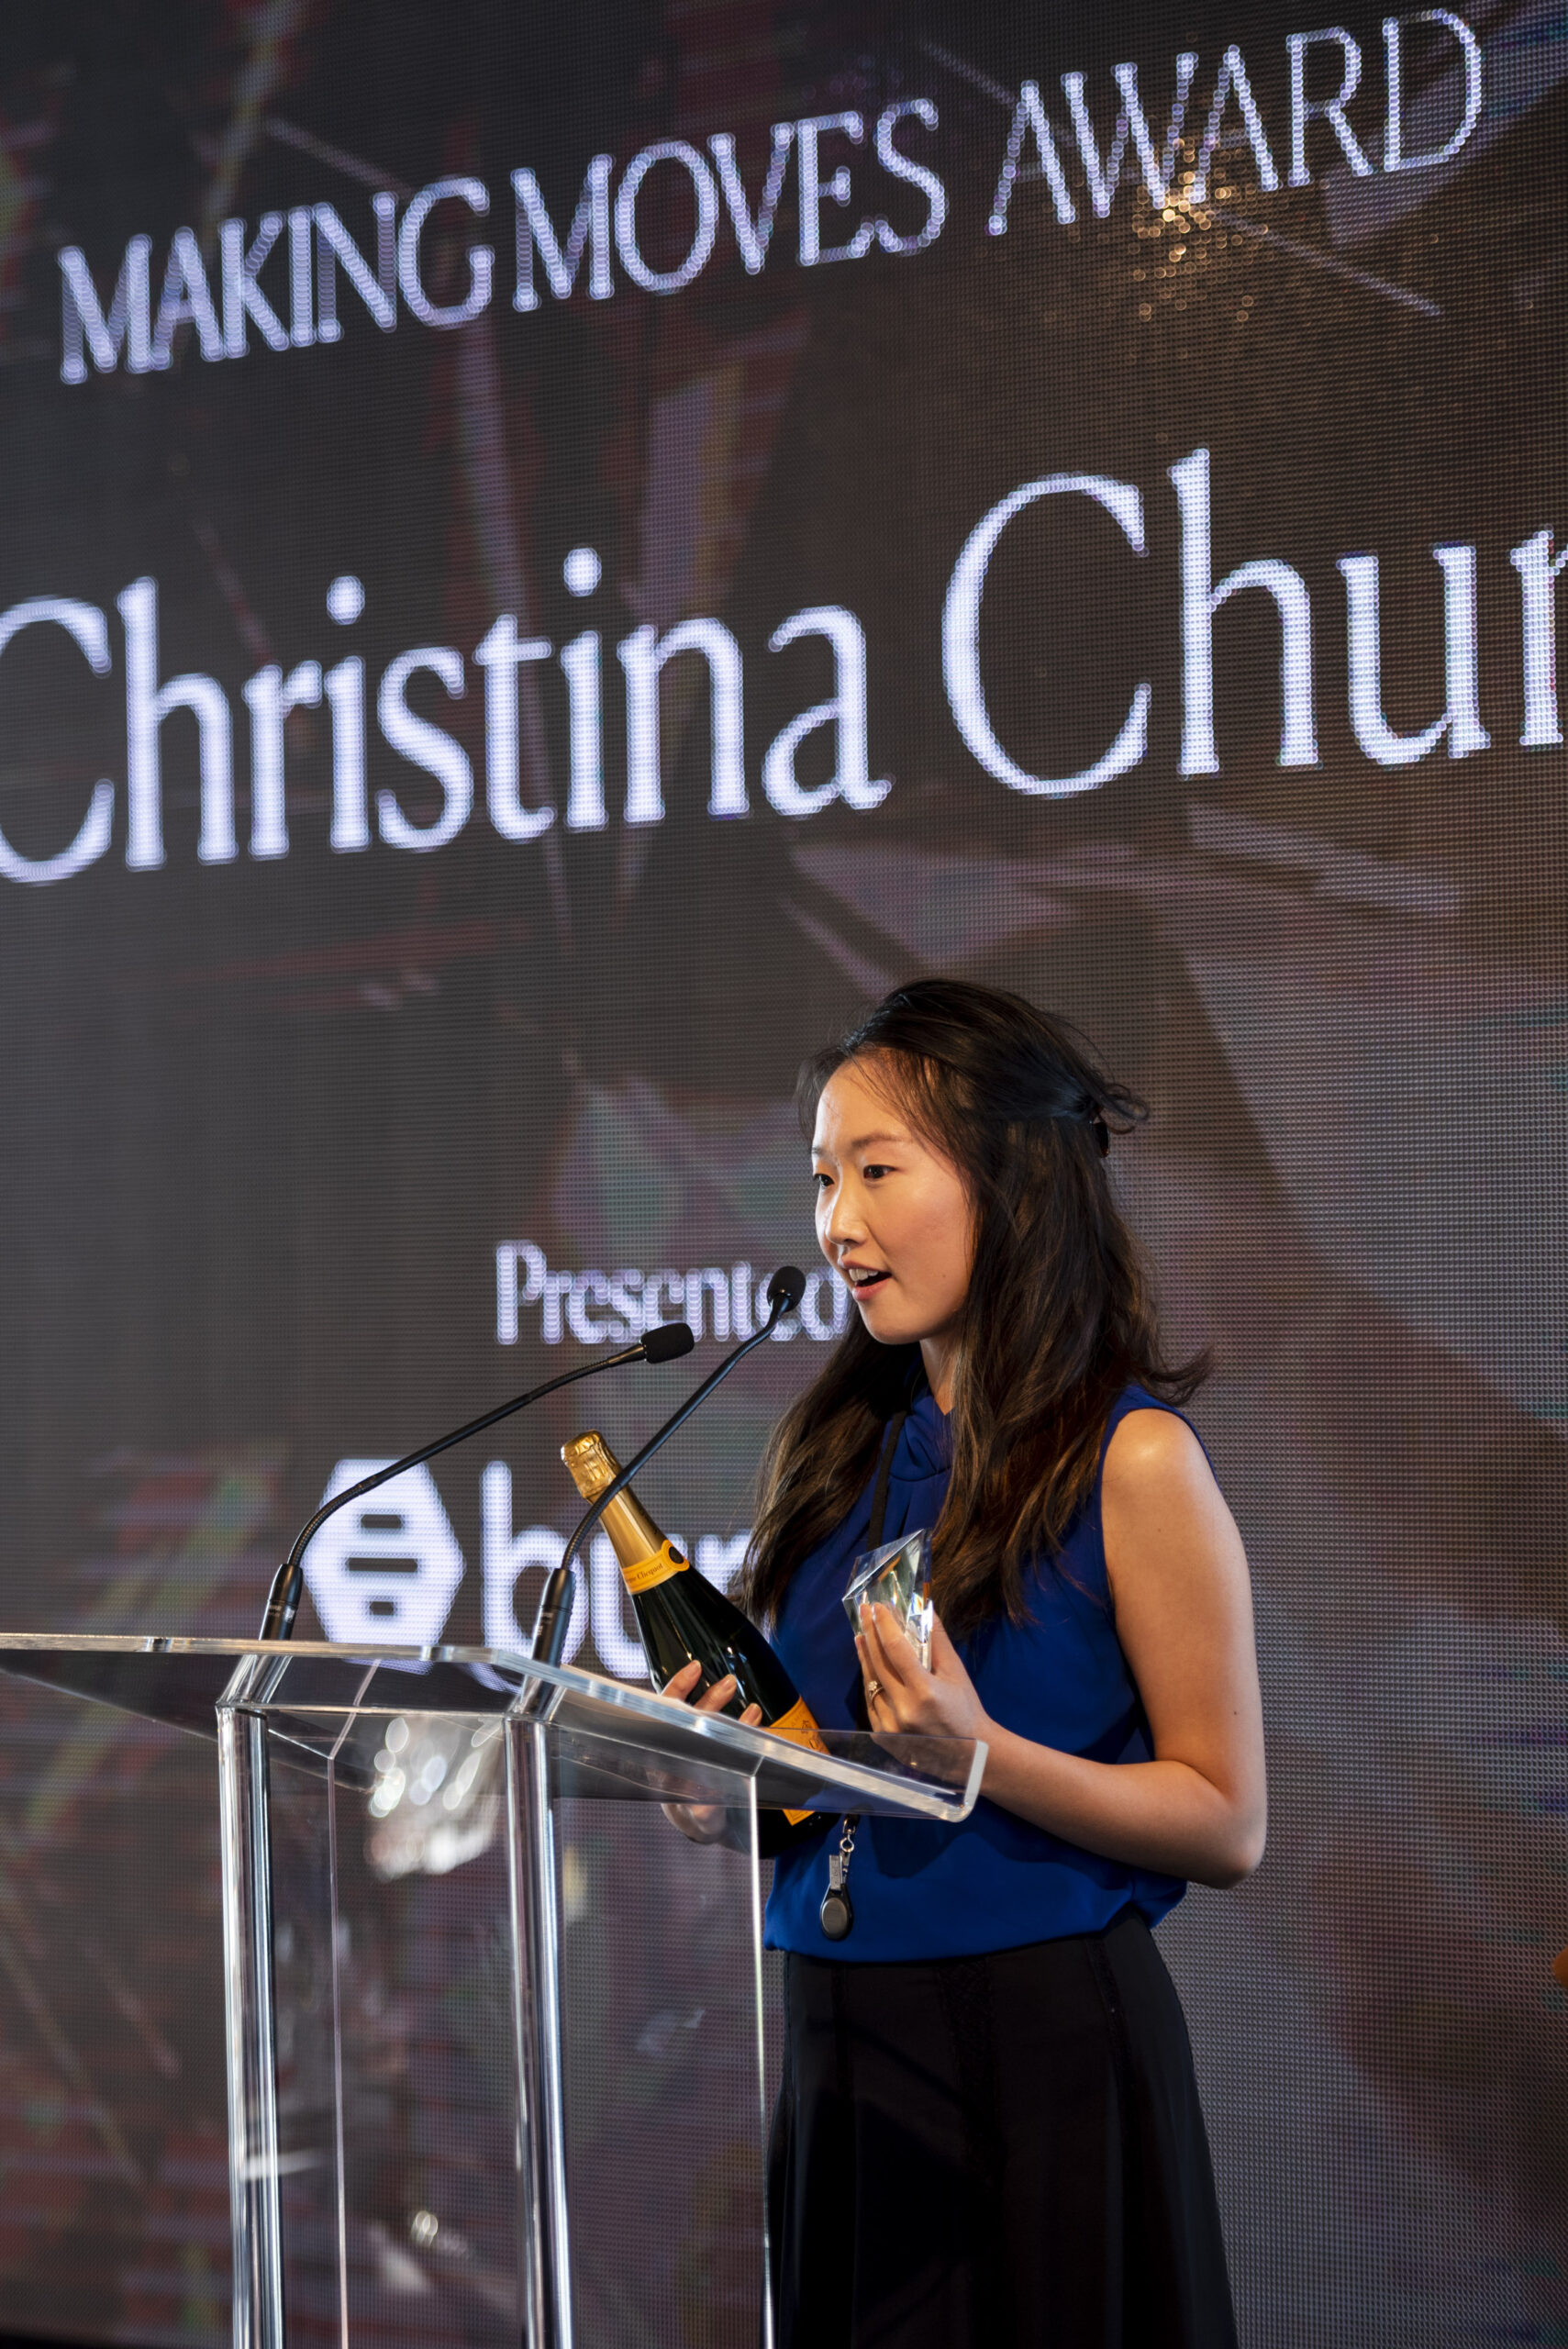 Christina Chun wins bumble's Making Moves award